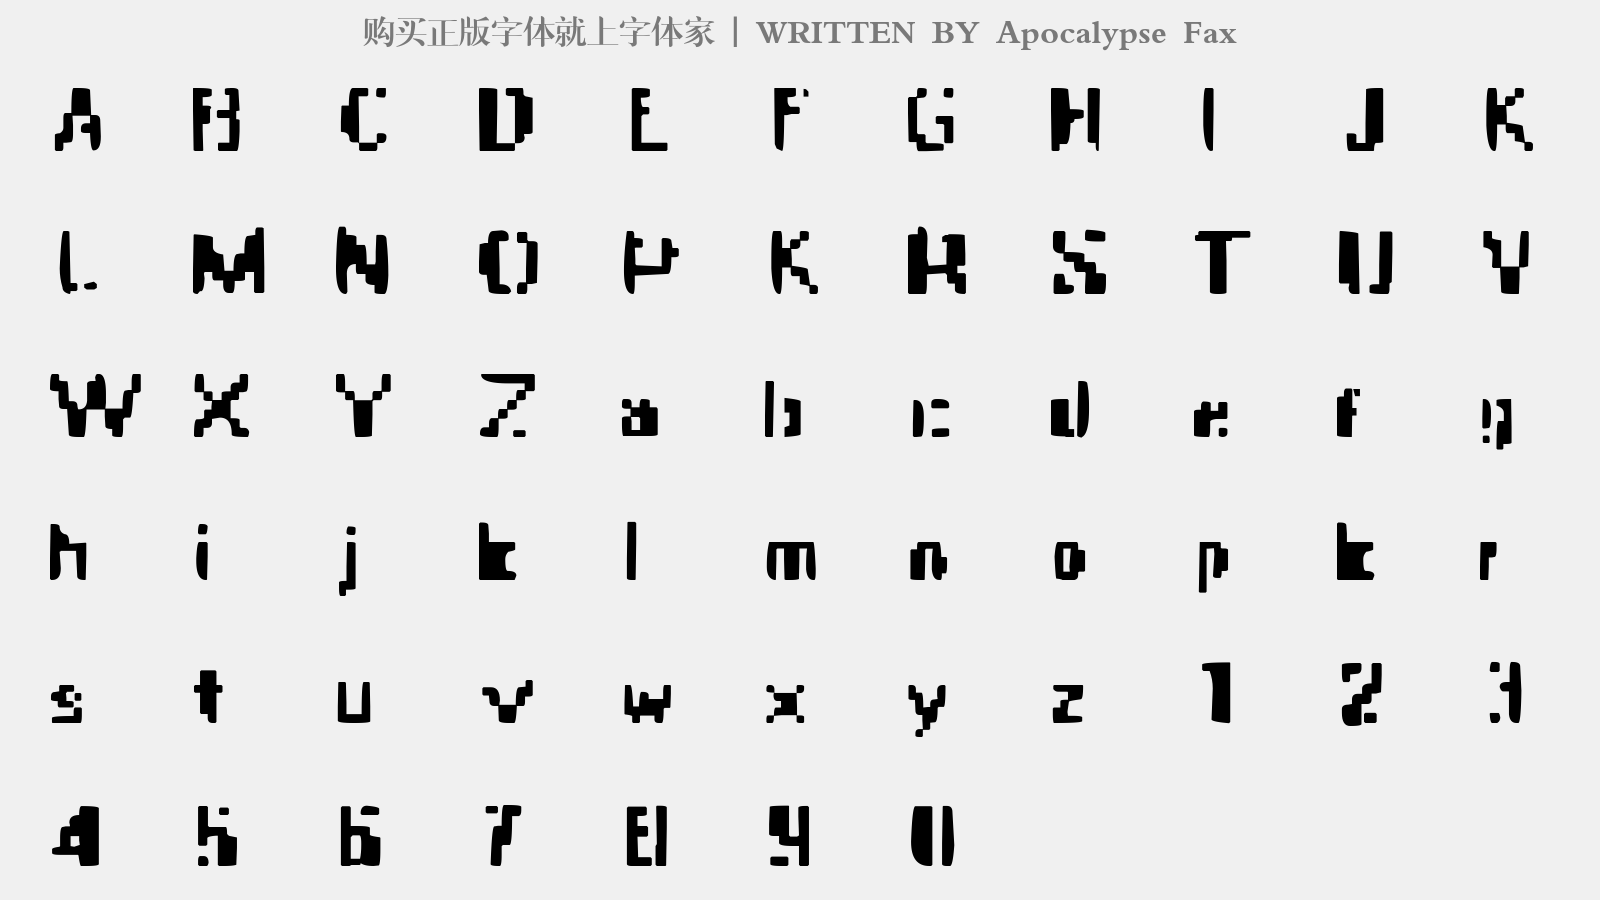 Apocalypse Fax - 大写字母/小写字母/数字